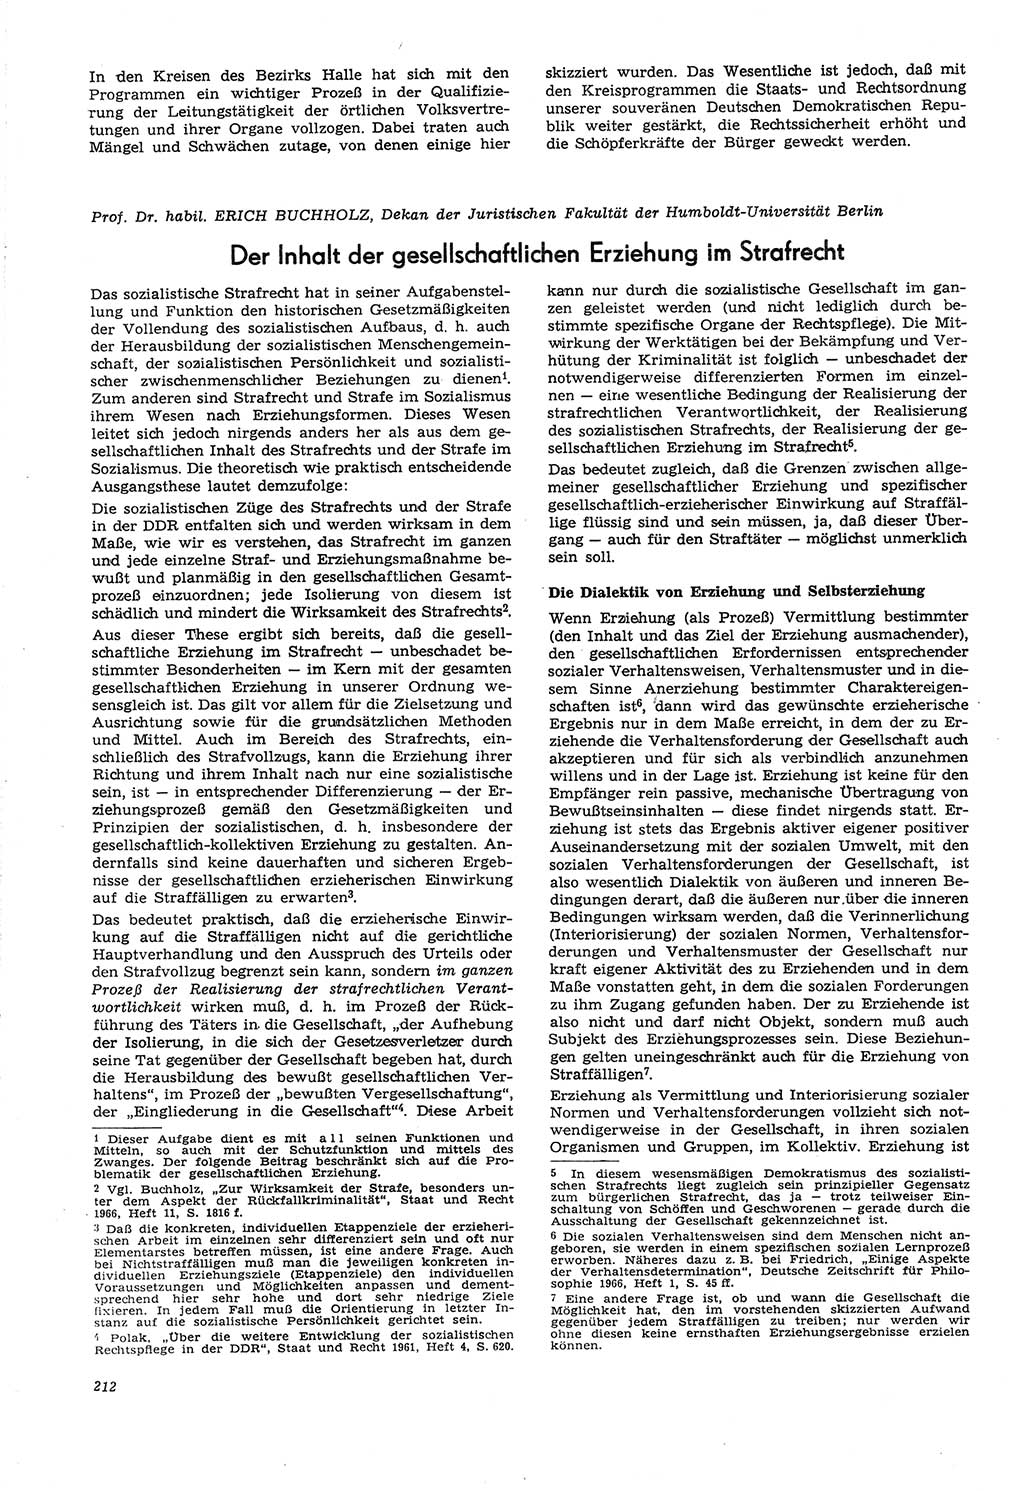 Neue Justiz (NJ), Zeitschrift für Recht und Rechtswissenschaft [Deutsche Demokratische Republik (DDR)], 21. Jahrgang 1967, Seite 212 (NJ DDR 1967, S. 212)